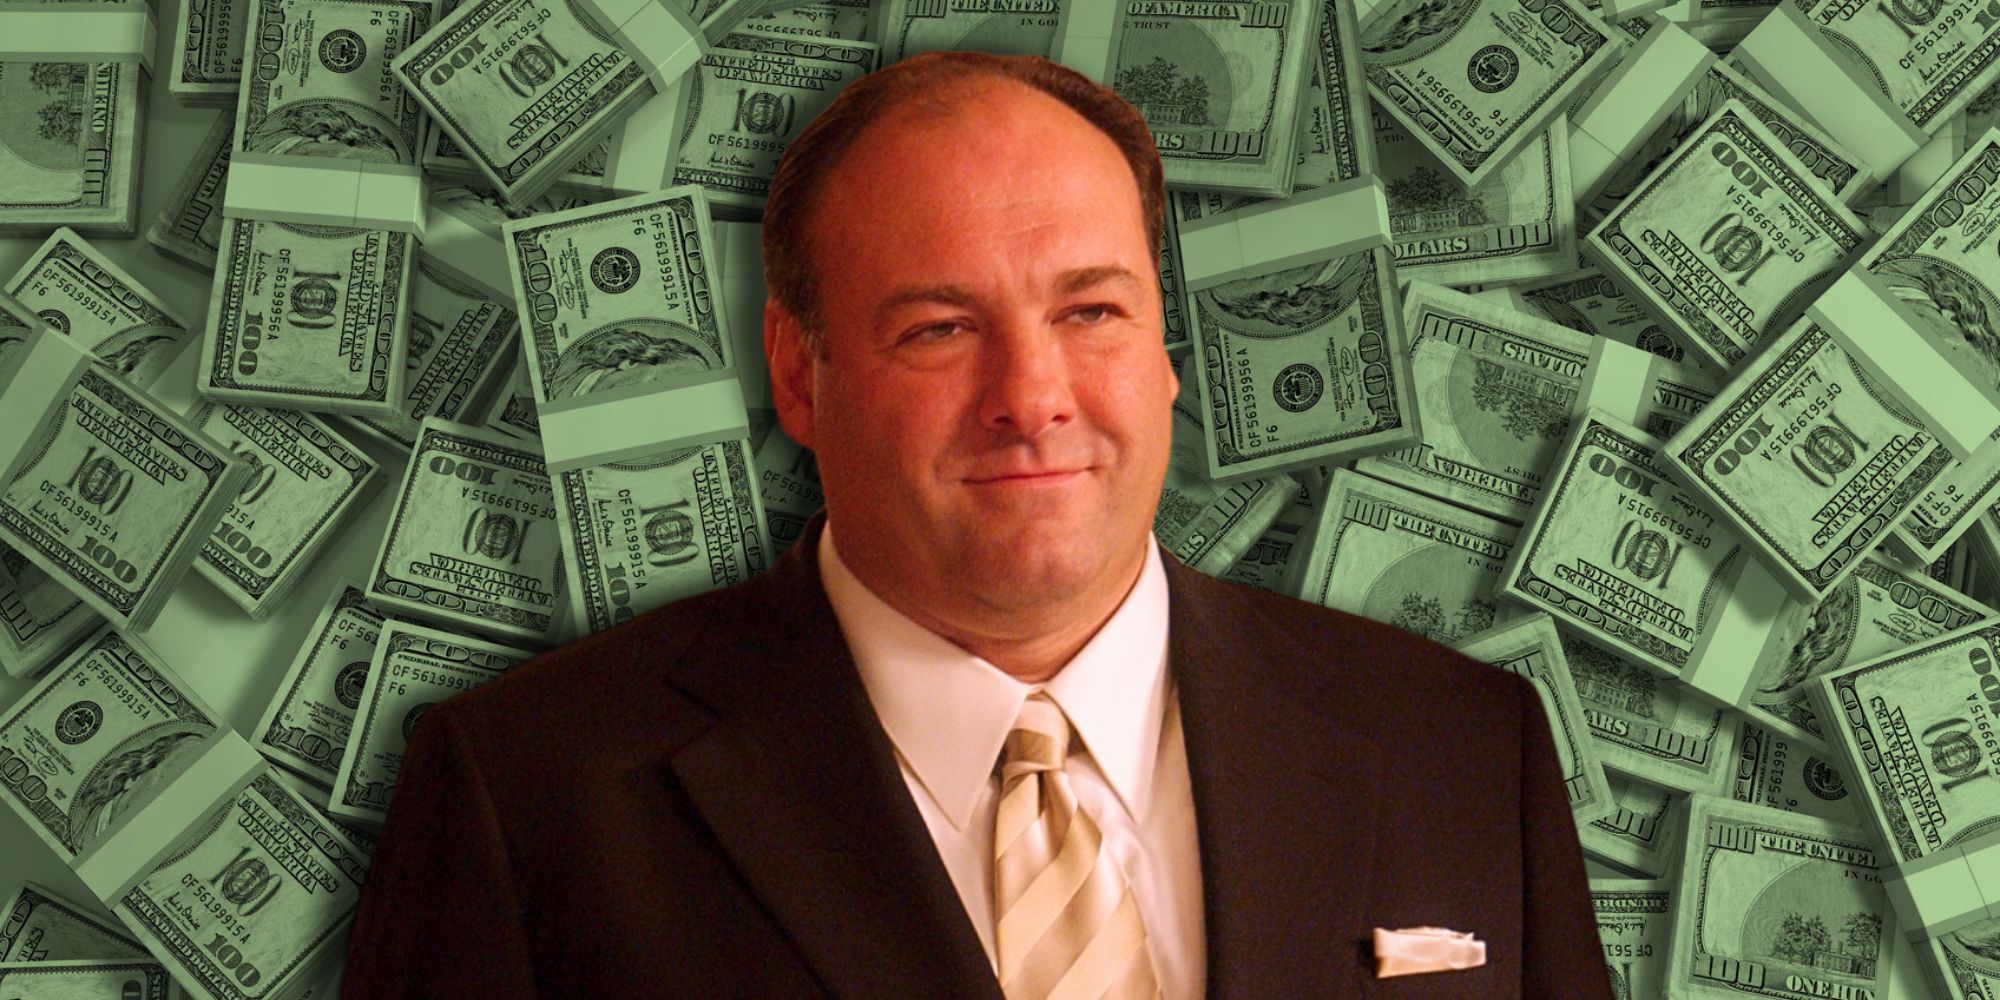 Tony Soprano against a backdrop of money